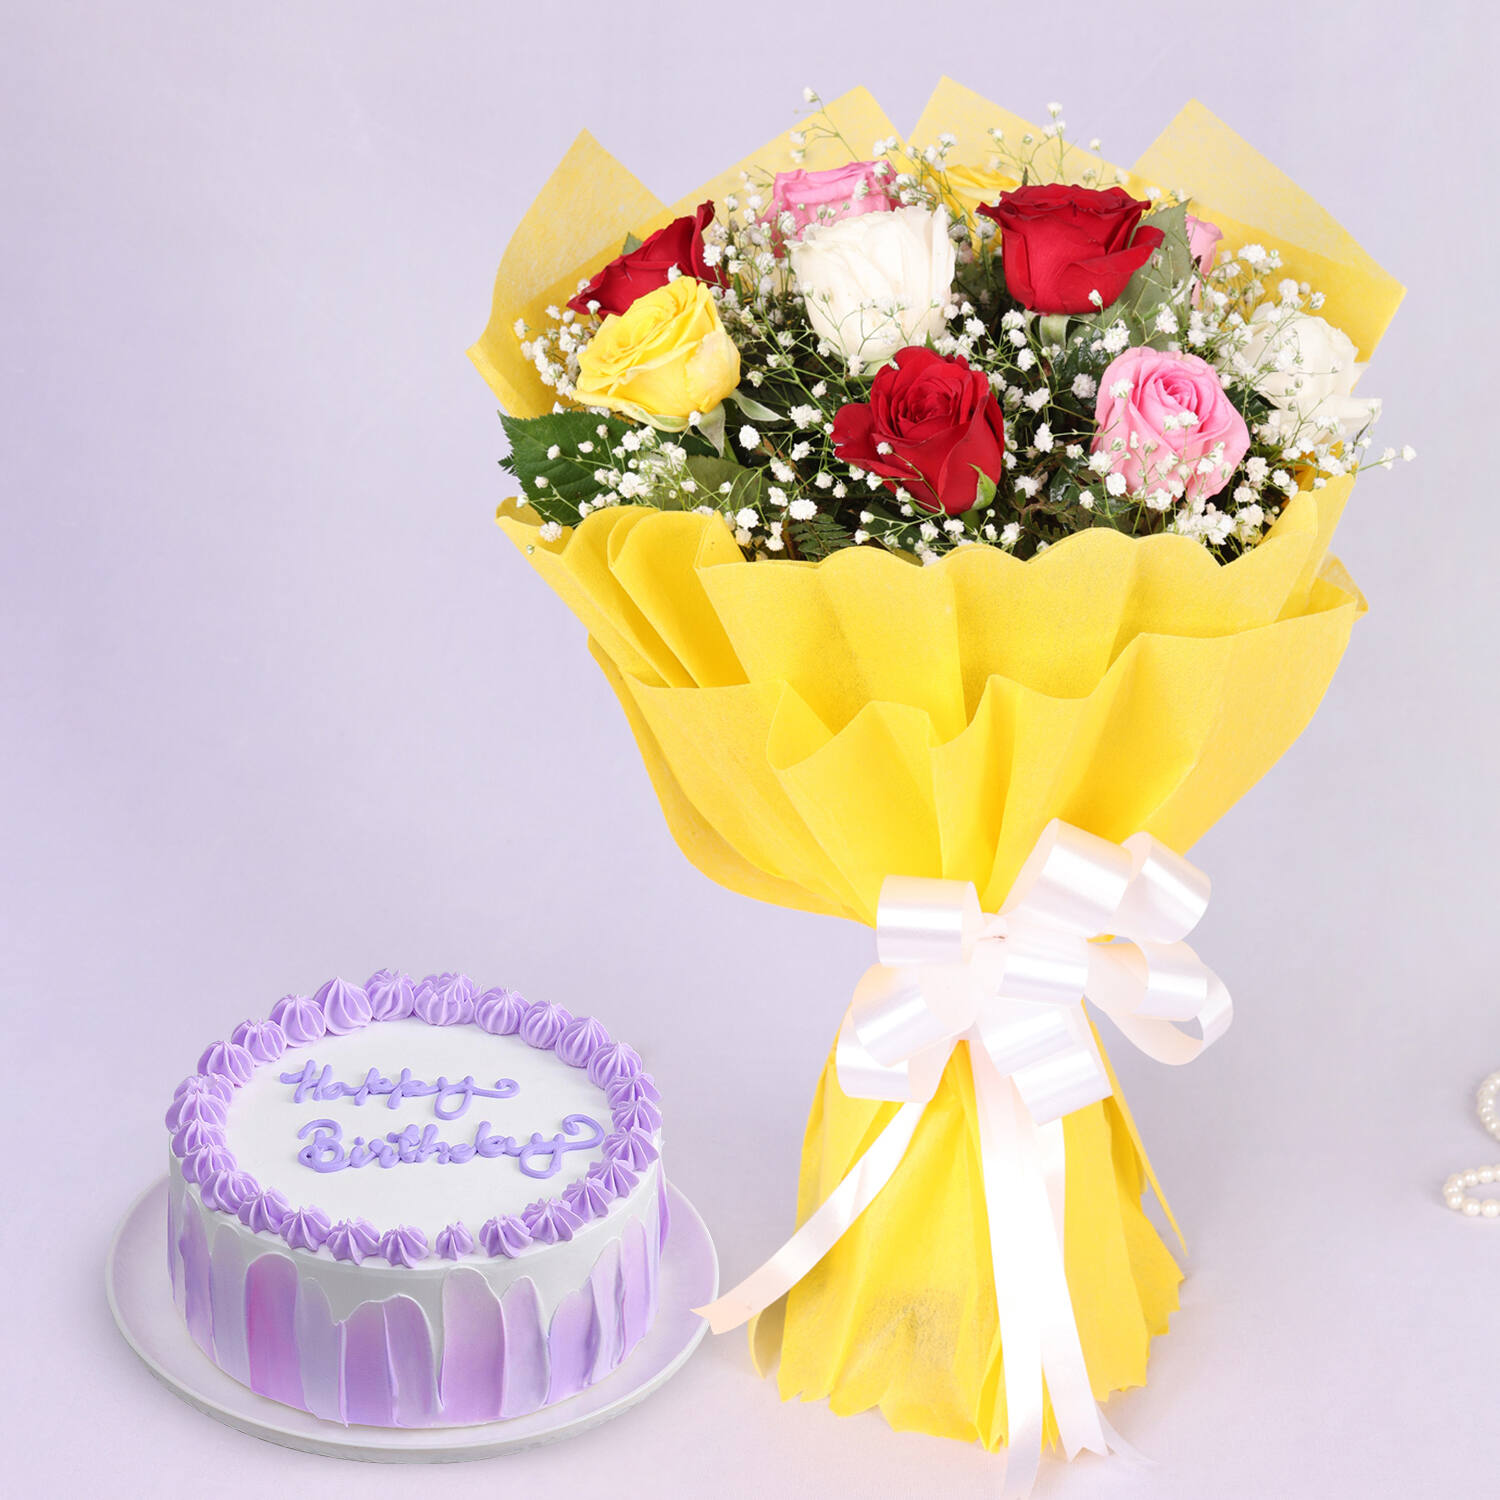 Birthday Gift Online Ka Saman Ke Latest For Best Friend Men Women Boy Boys  Girl Girls